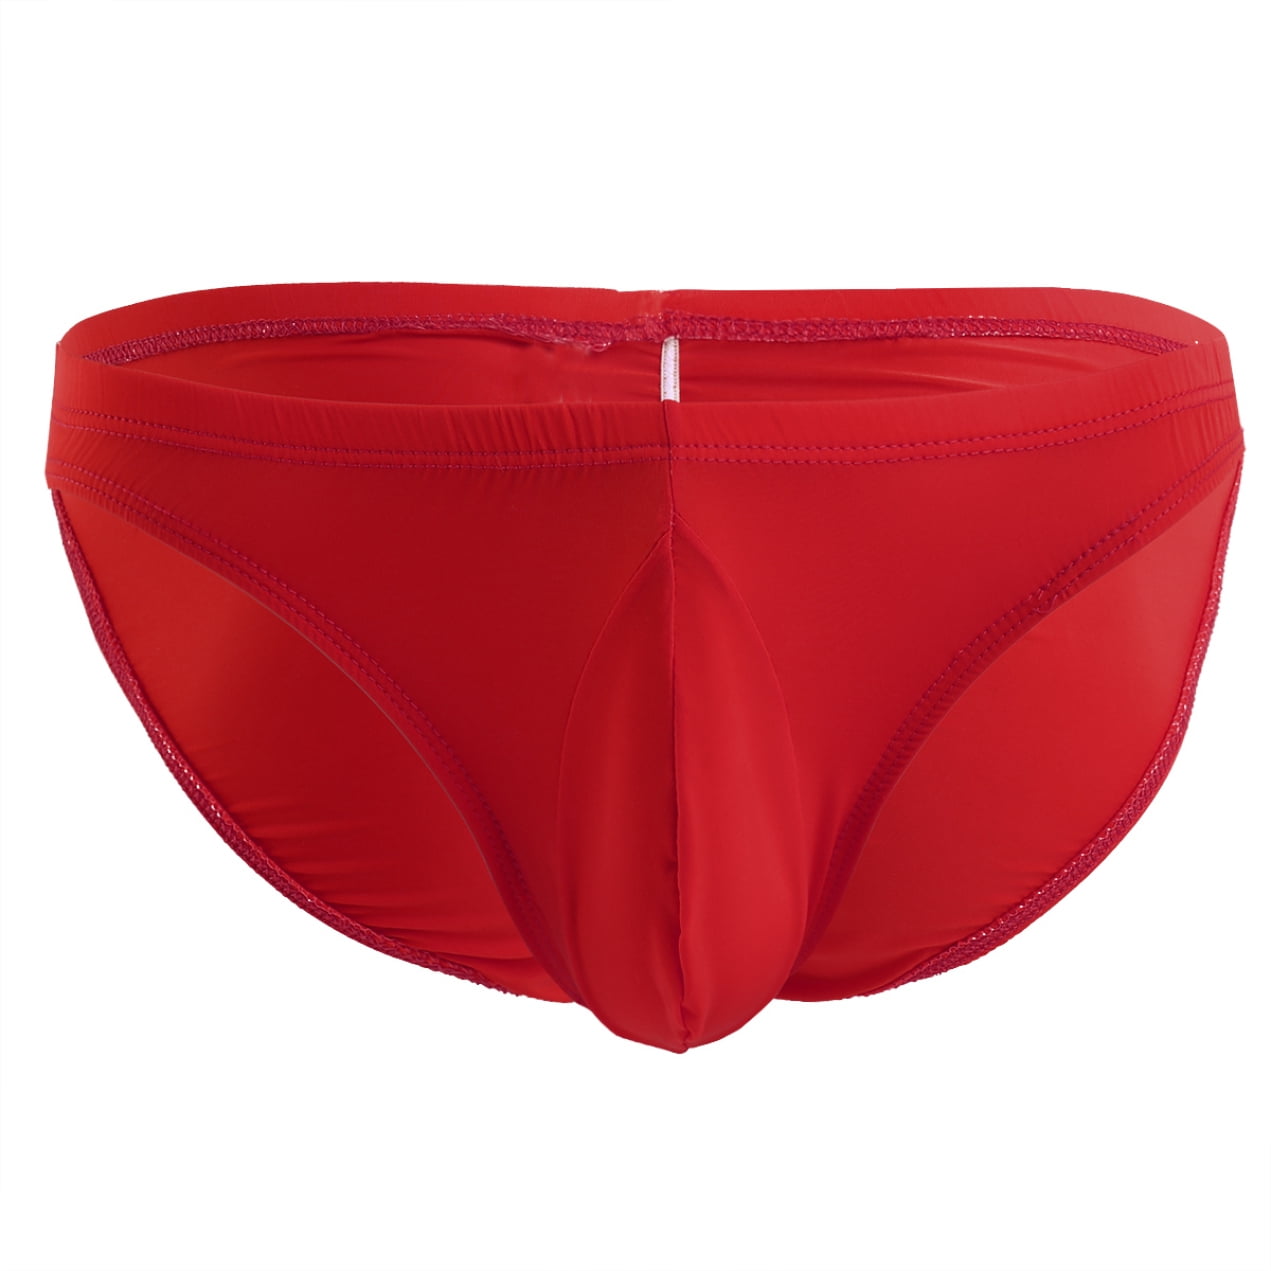 YiZYiF Men Silky Bikini Bulge Pouch Stretchy Ruched Back Smooth Underwear Swimwear Briefs 